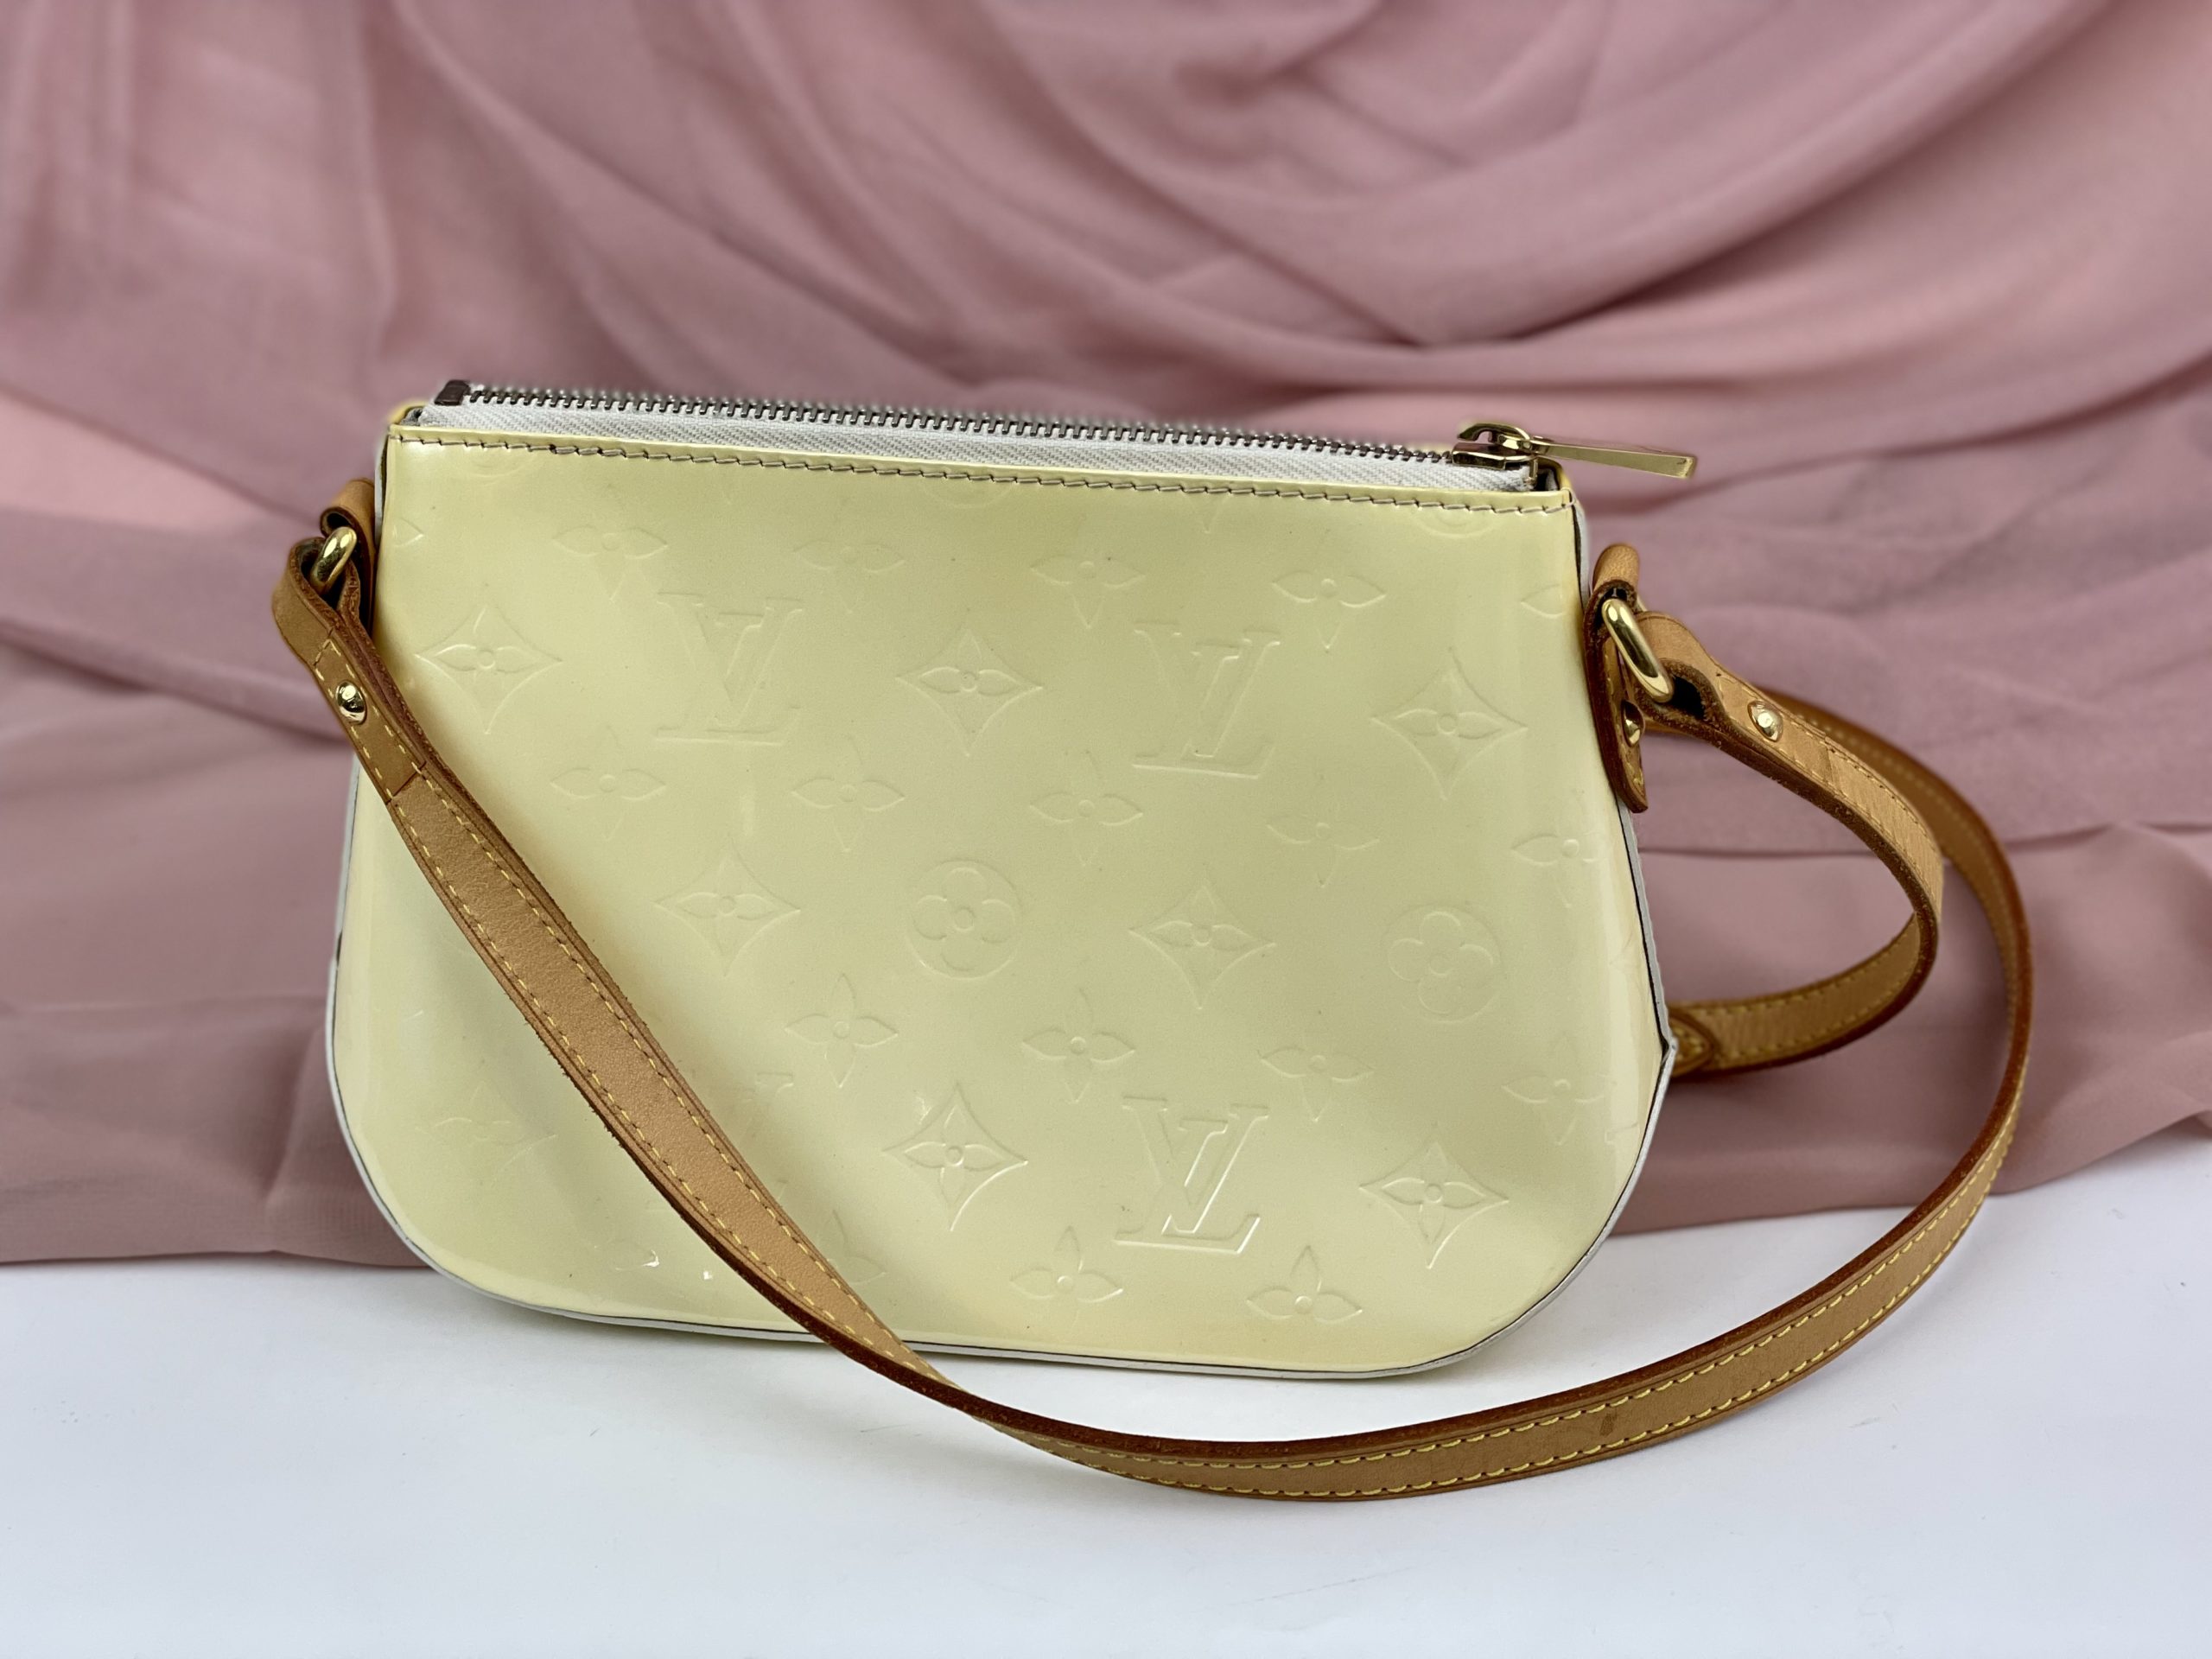 Louis Vuitton Vernis Minna Street – Brand Bag Girl